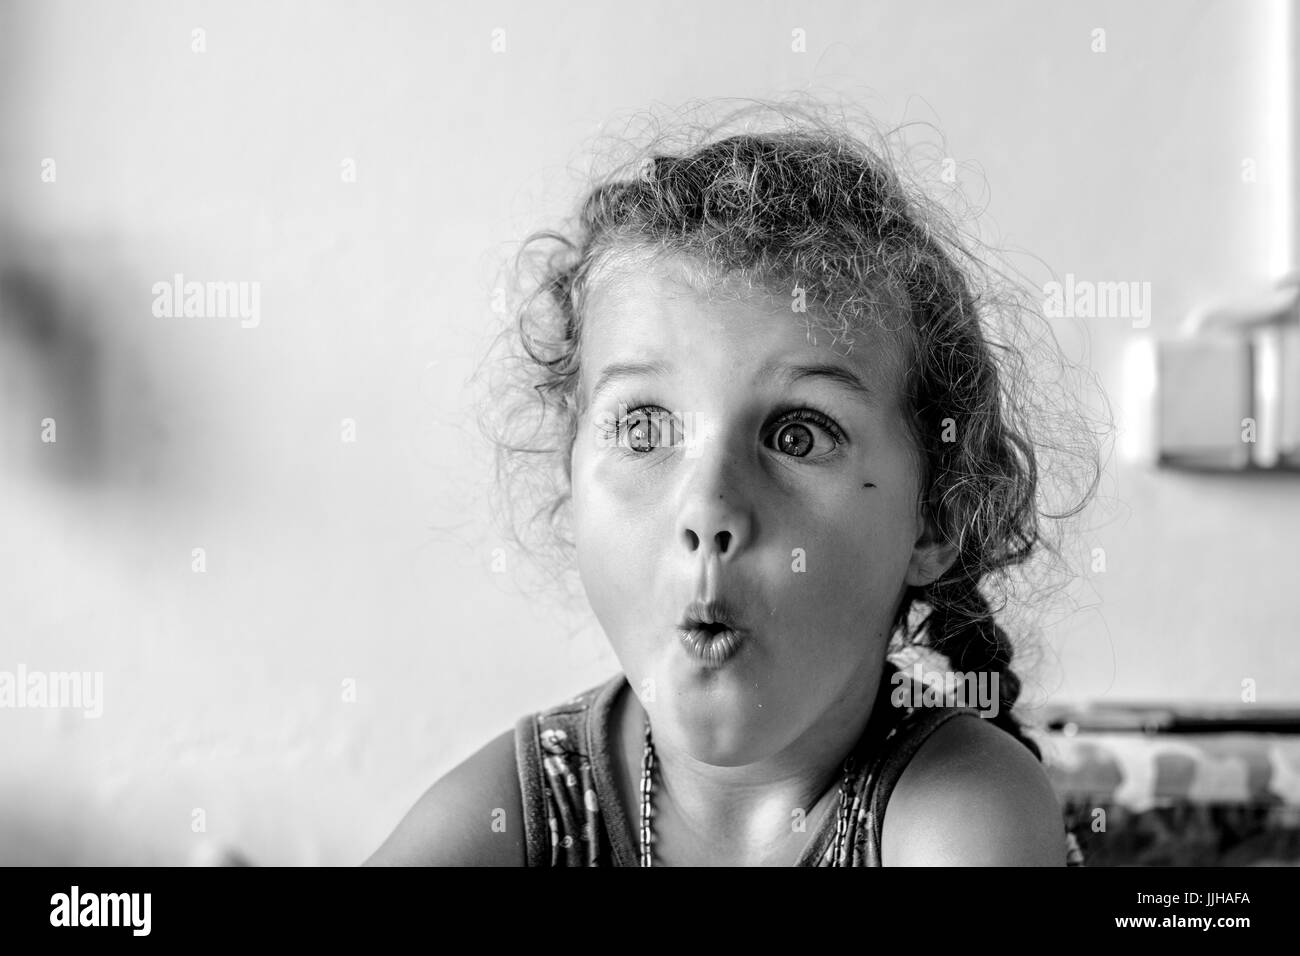 Photo noir et blanc avec surpris jeune fille aux cheveux bouclés regardant à droite Banque D'Images